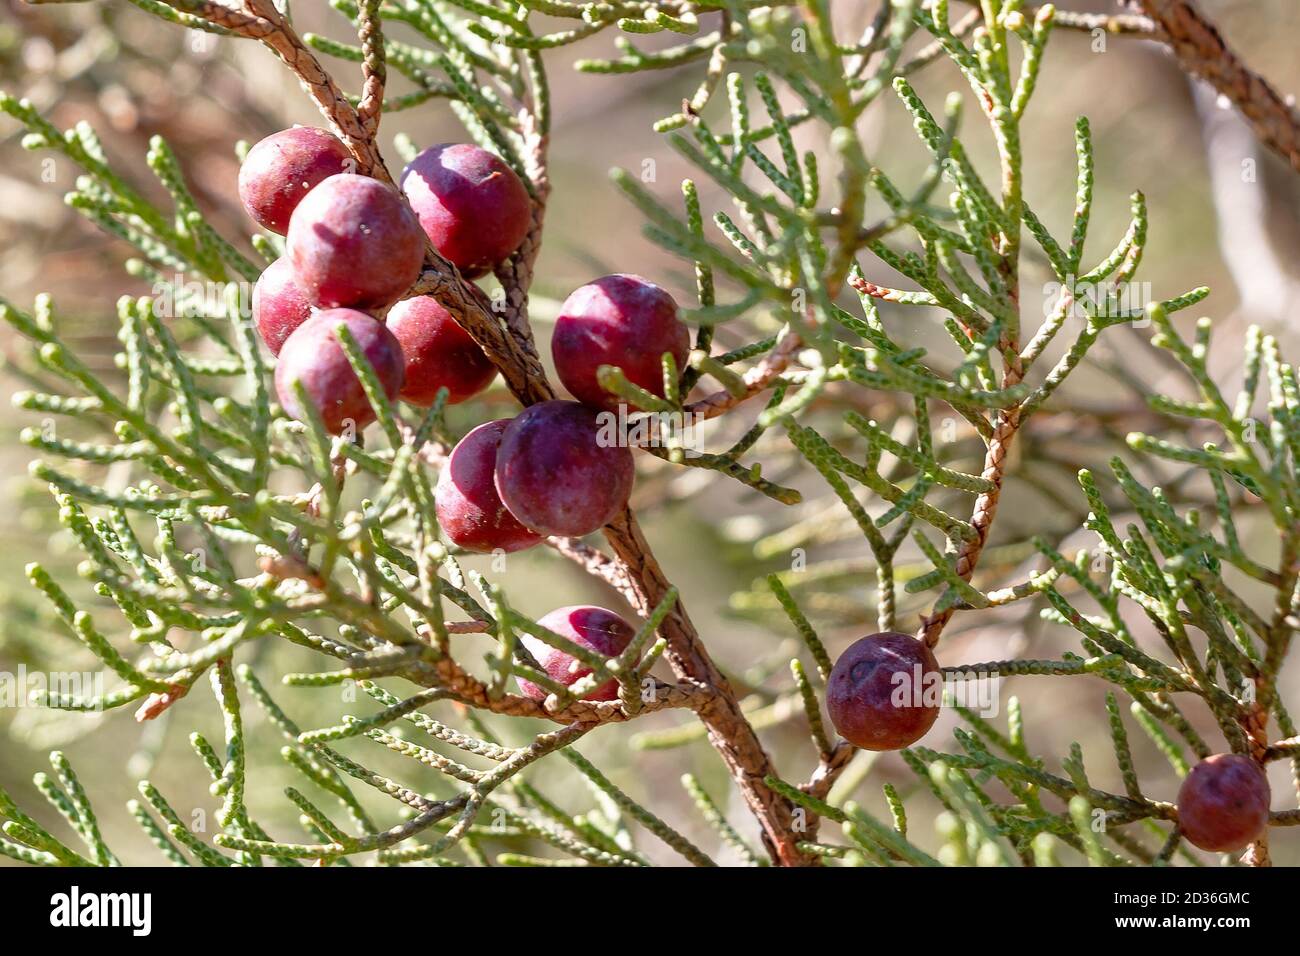 Juniperus phoenicea L, schwarzer Wacholder oder glatter Wacholder. Allgemein bekannt als phönizischer Wacholder, ist ein Strauch oder kleiner immergrüner Baum, mit skalierten Blättern a Stockfoto